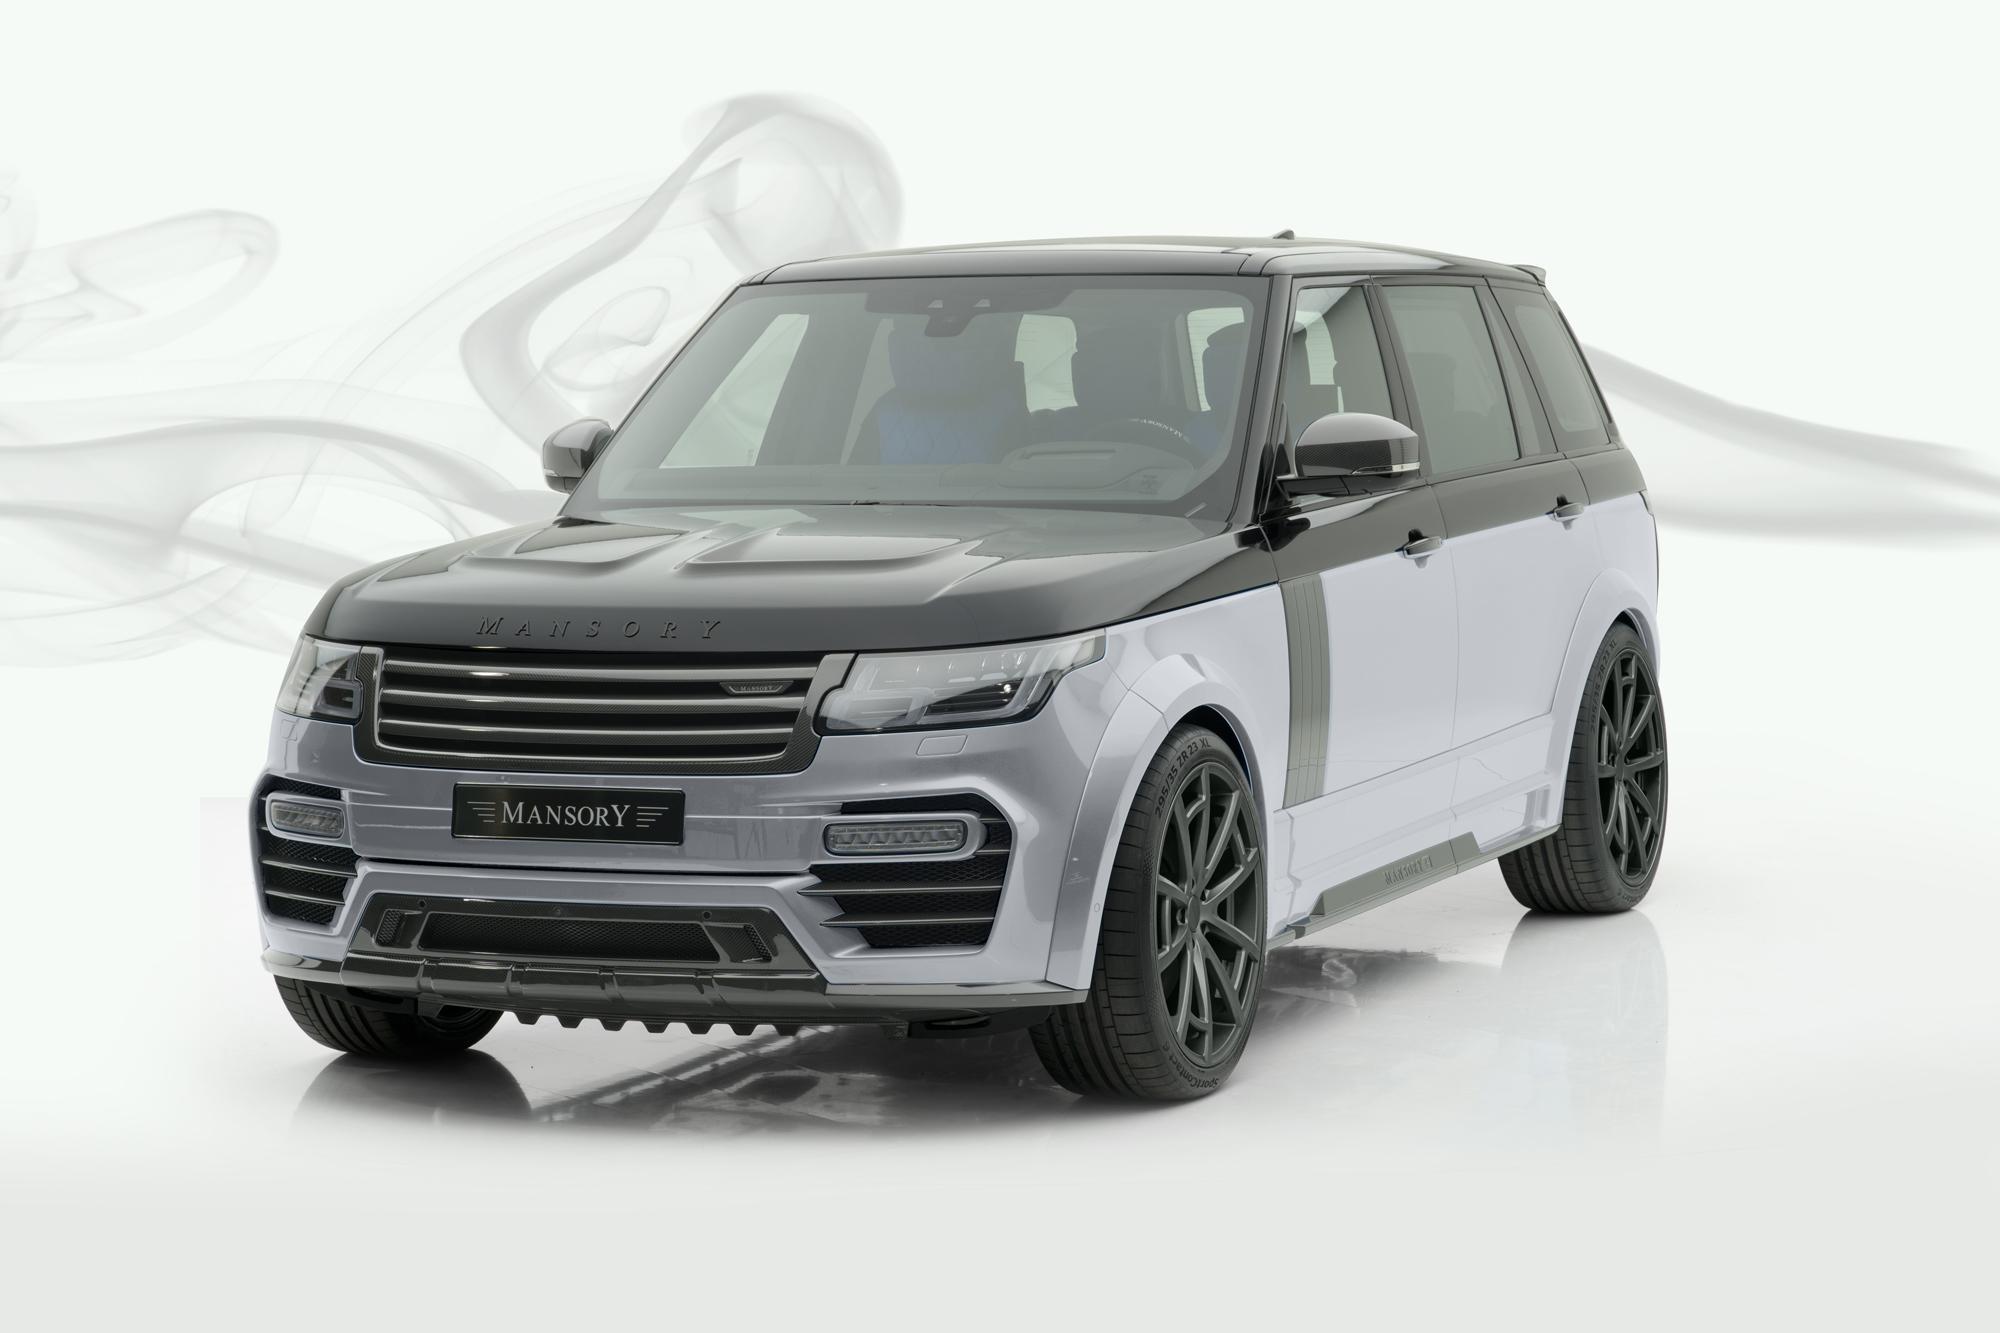 Mansory body kit for Range Rover new model